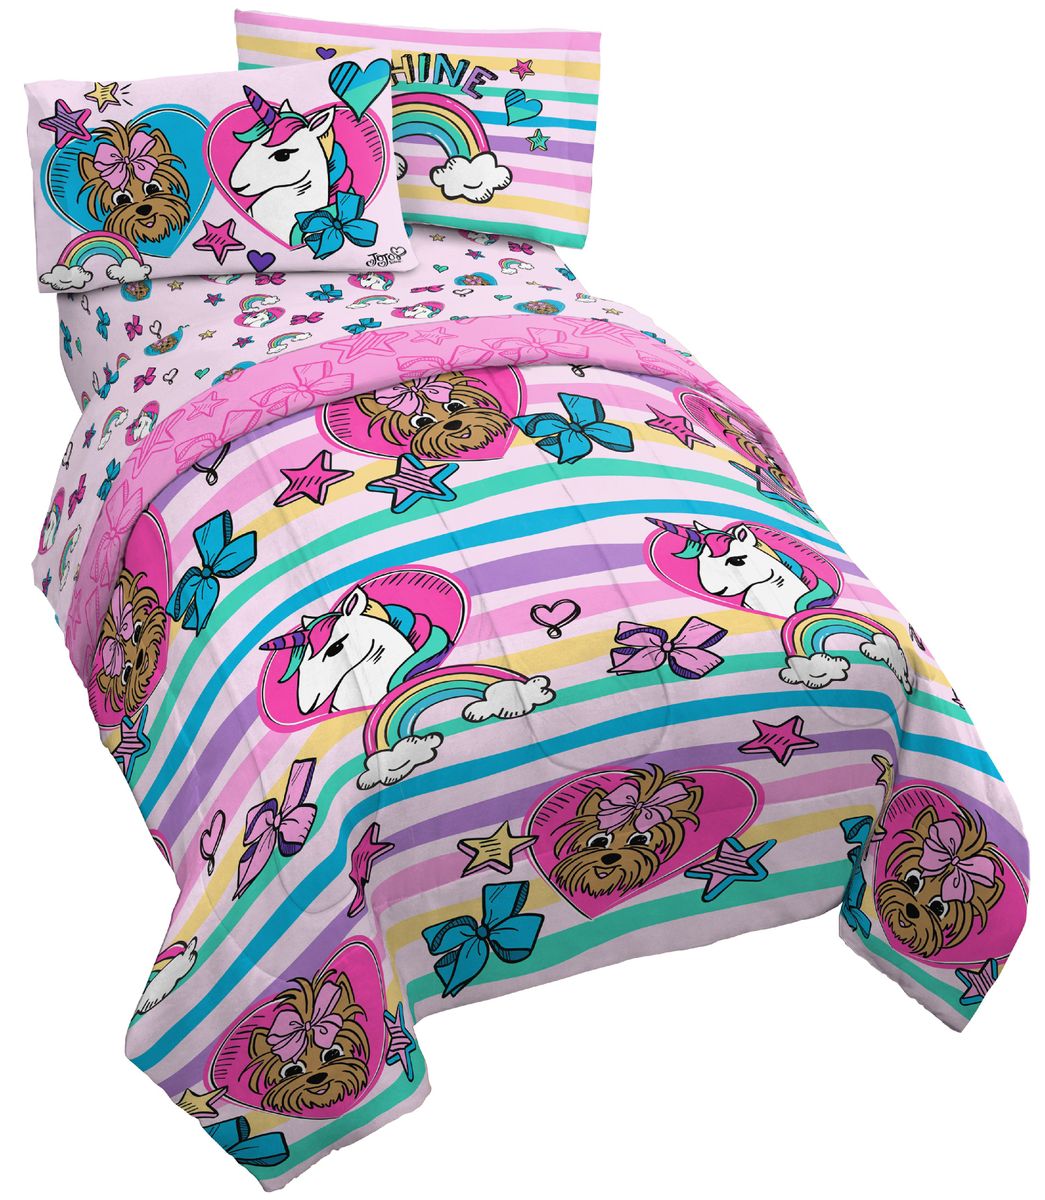 楽天市場】[送料無料] JoJo Siwa ユニコーンシャインストライプ子供用寝具5点セット/リバーシブルピンクリボン掛け布団付き [楽天海外通販]  | Jojo Siwa 5-Piece Unicorn Shine Striped Kids Bedding Set w/ Reversible  Pink Bows Comforter : Walmart 楽天市場店